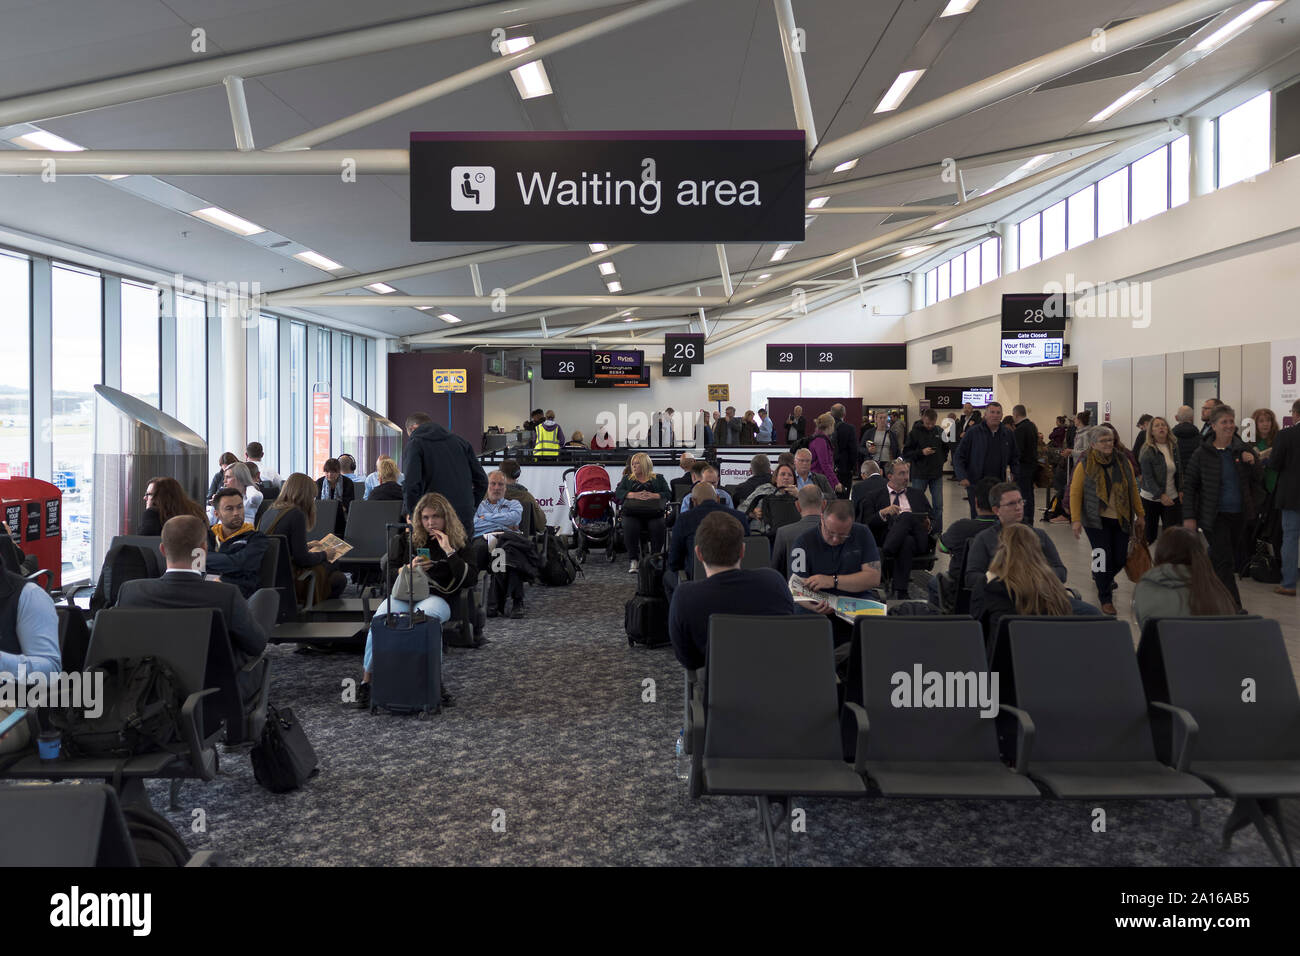 Dh de départ l'aéroport d'Édimbourg Édimbourg Personnes dans l'aire d'attente des passagers prêts à bord d'aéroport avion Banque D'Images